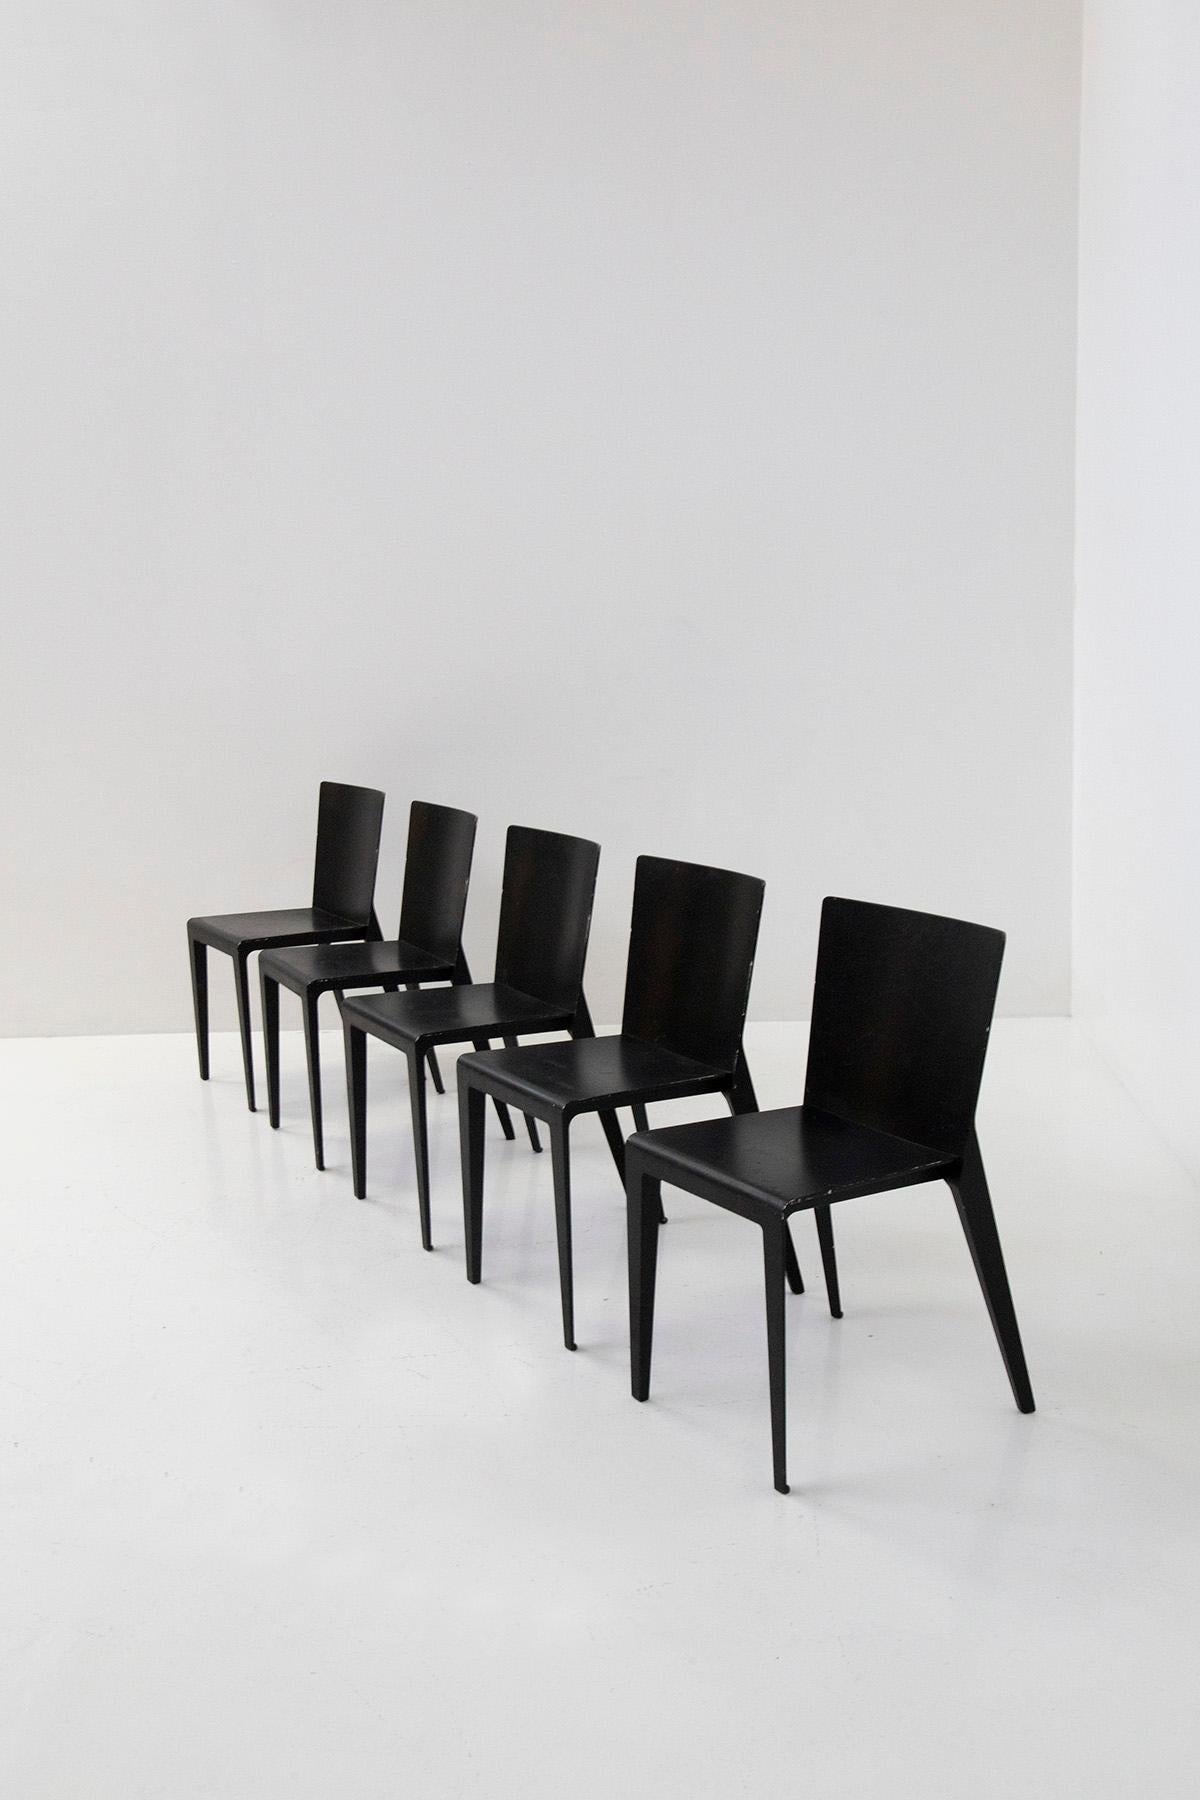 Satz von fünf Stühlen des Modells Alfa, hergestellt von Molteni im Jahr 2001 nach einem Entwurf von Hannes Wettstein für den italienischen Hersteller Molteni. 
Alfa ist aus der Kombination von nur zwei Teilen entstanden: die Rückenlehne, die in die